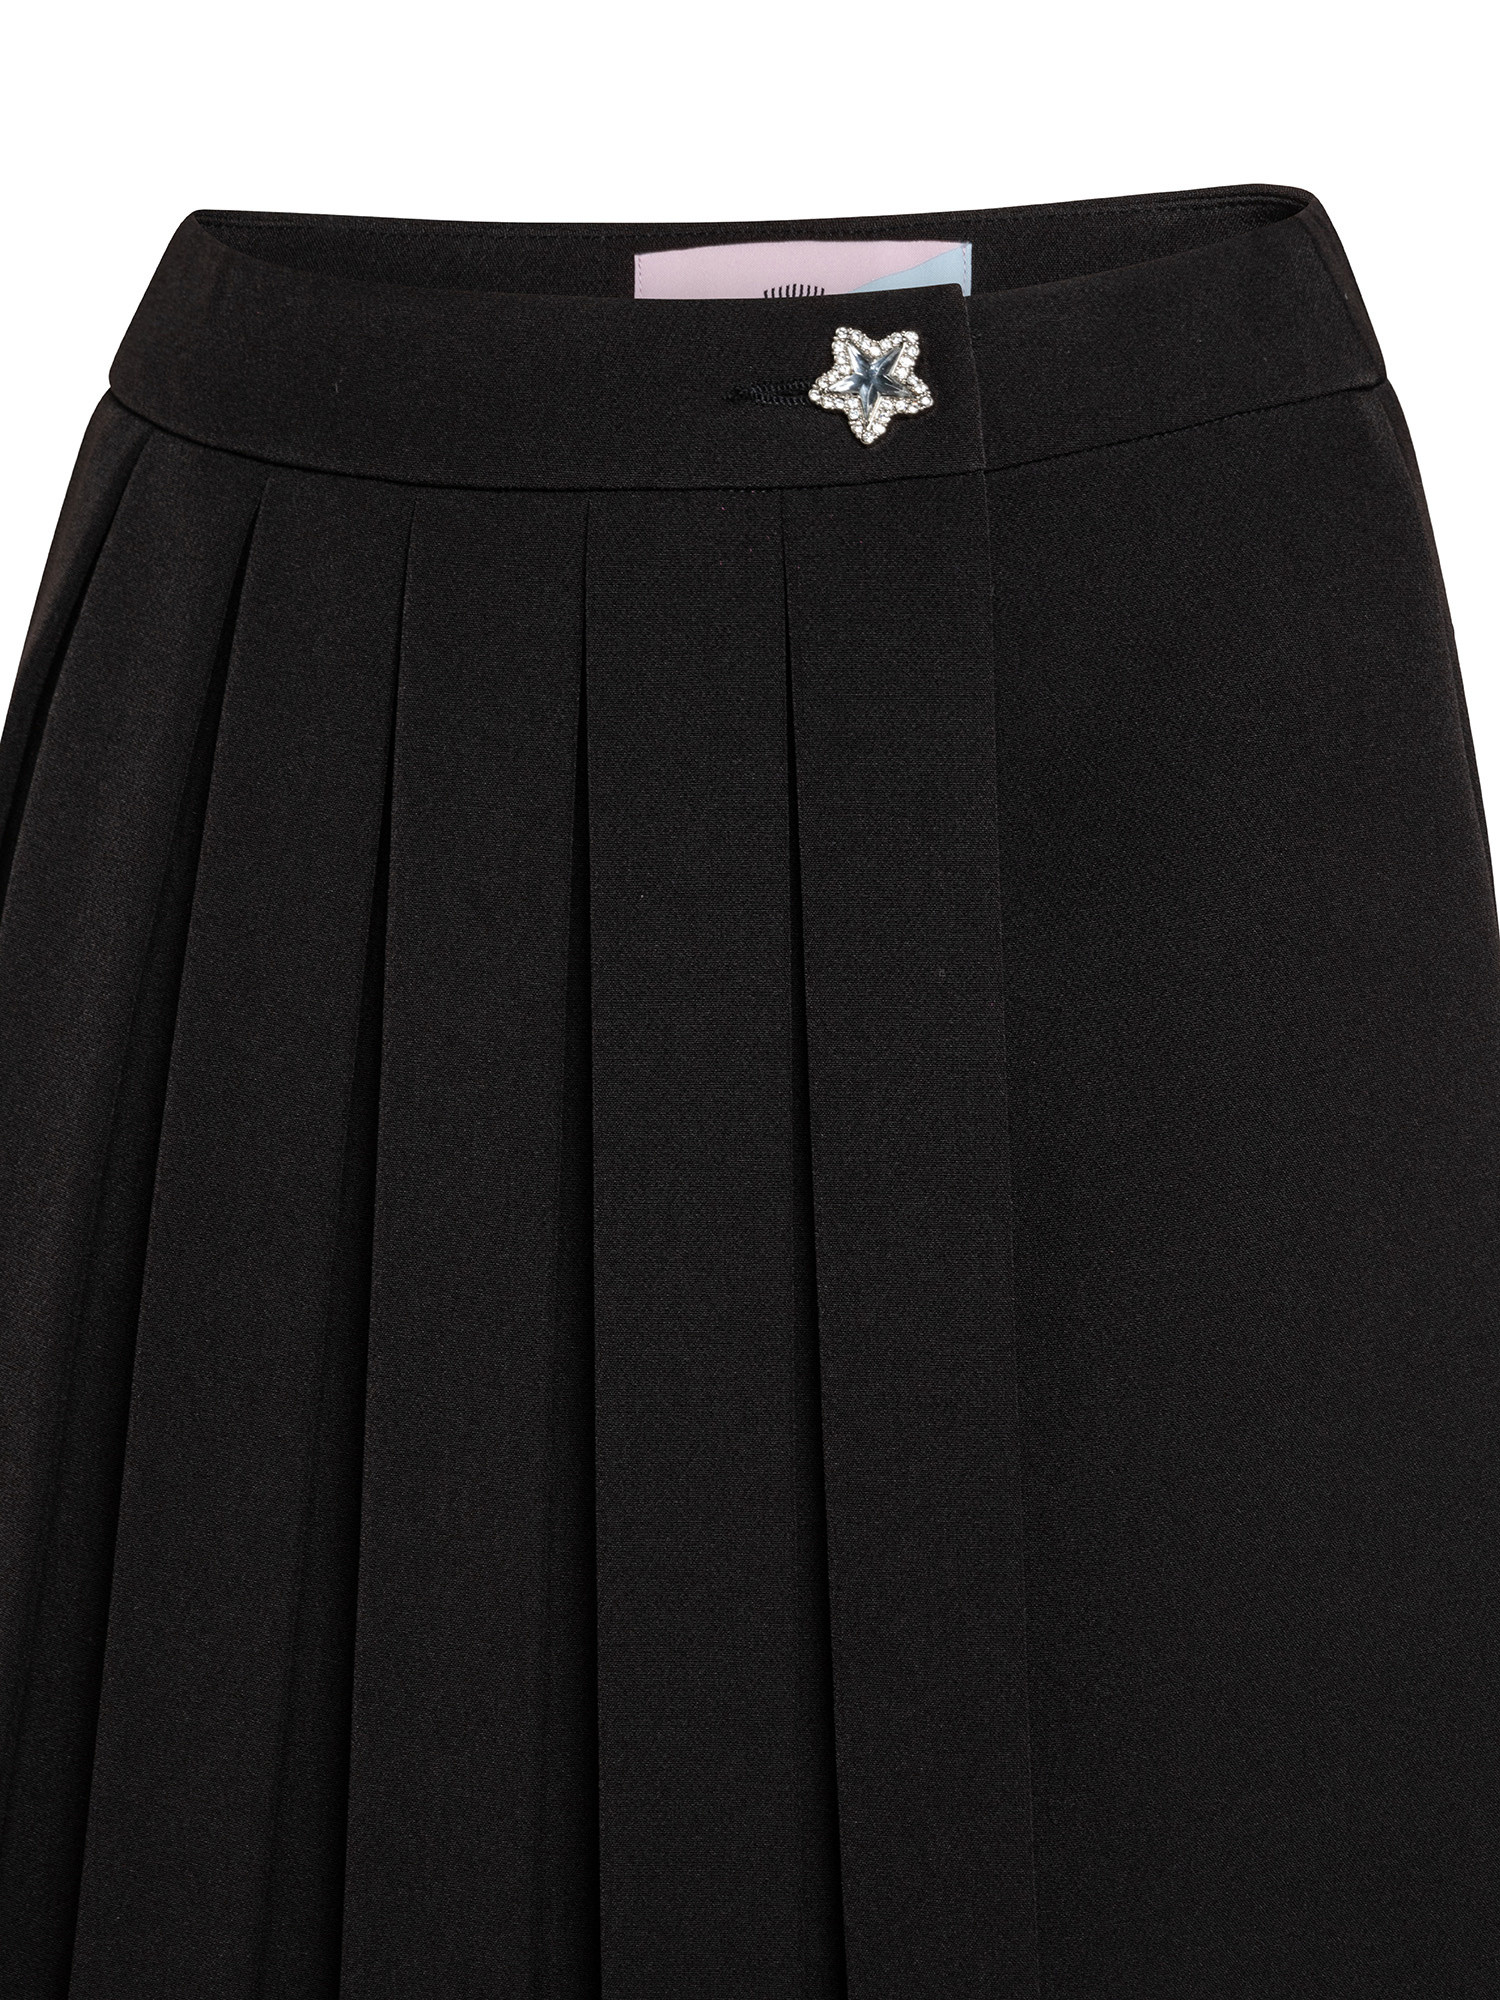 Skirt, Black, large image number 2